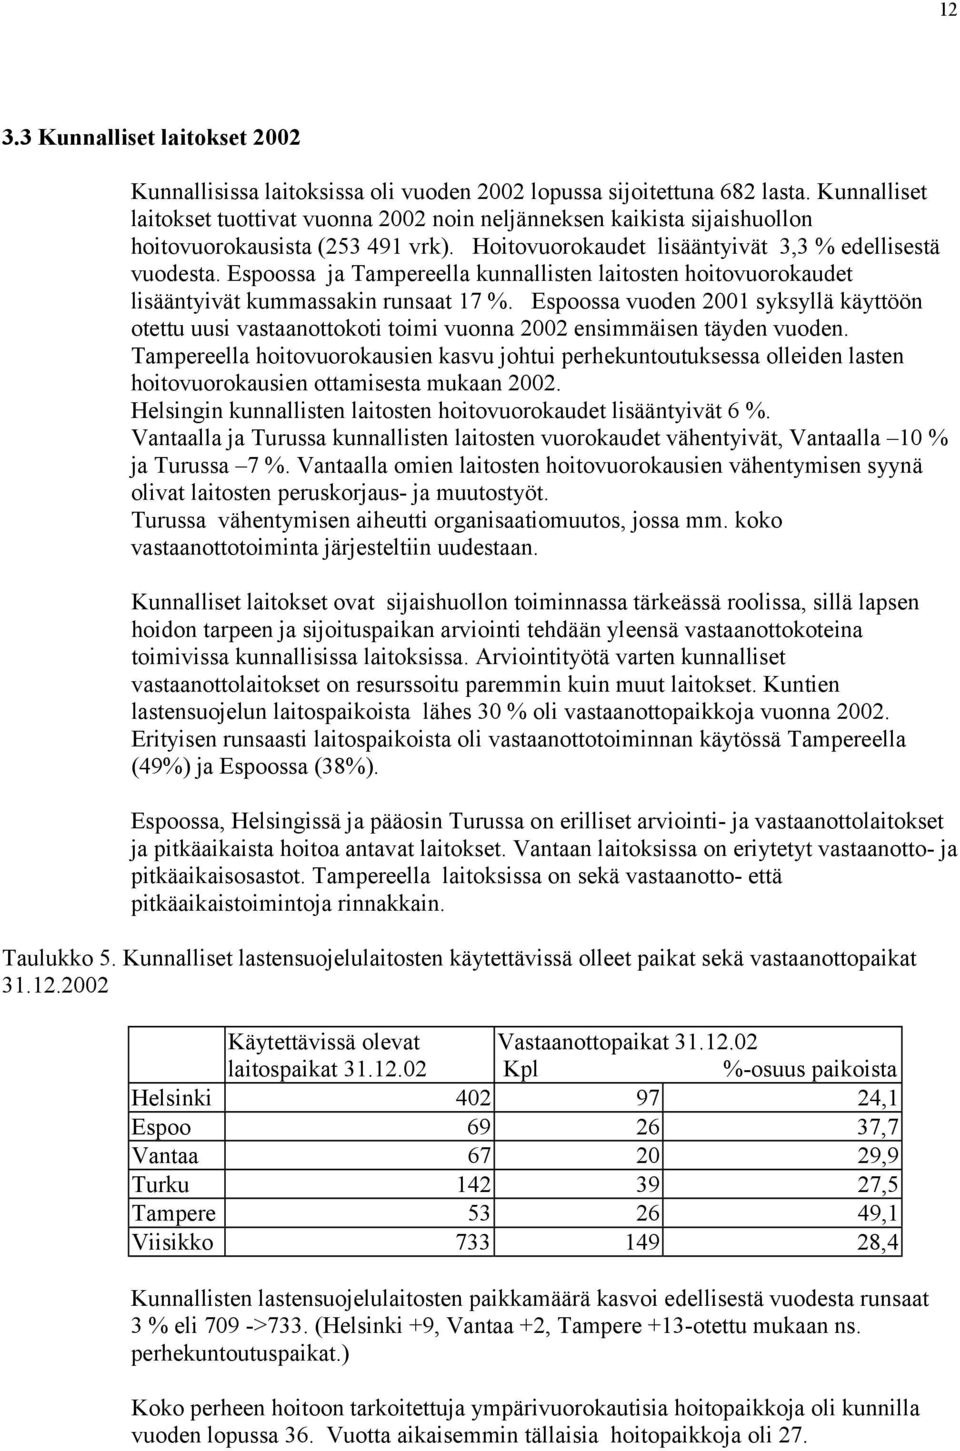 Espoossa ja Tampereella kunnallisten laitosten hoitovuorokaudet lisääntyivät kummassakin runsaat 17 %.